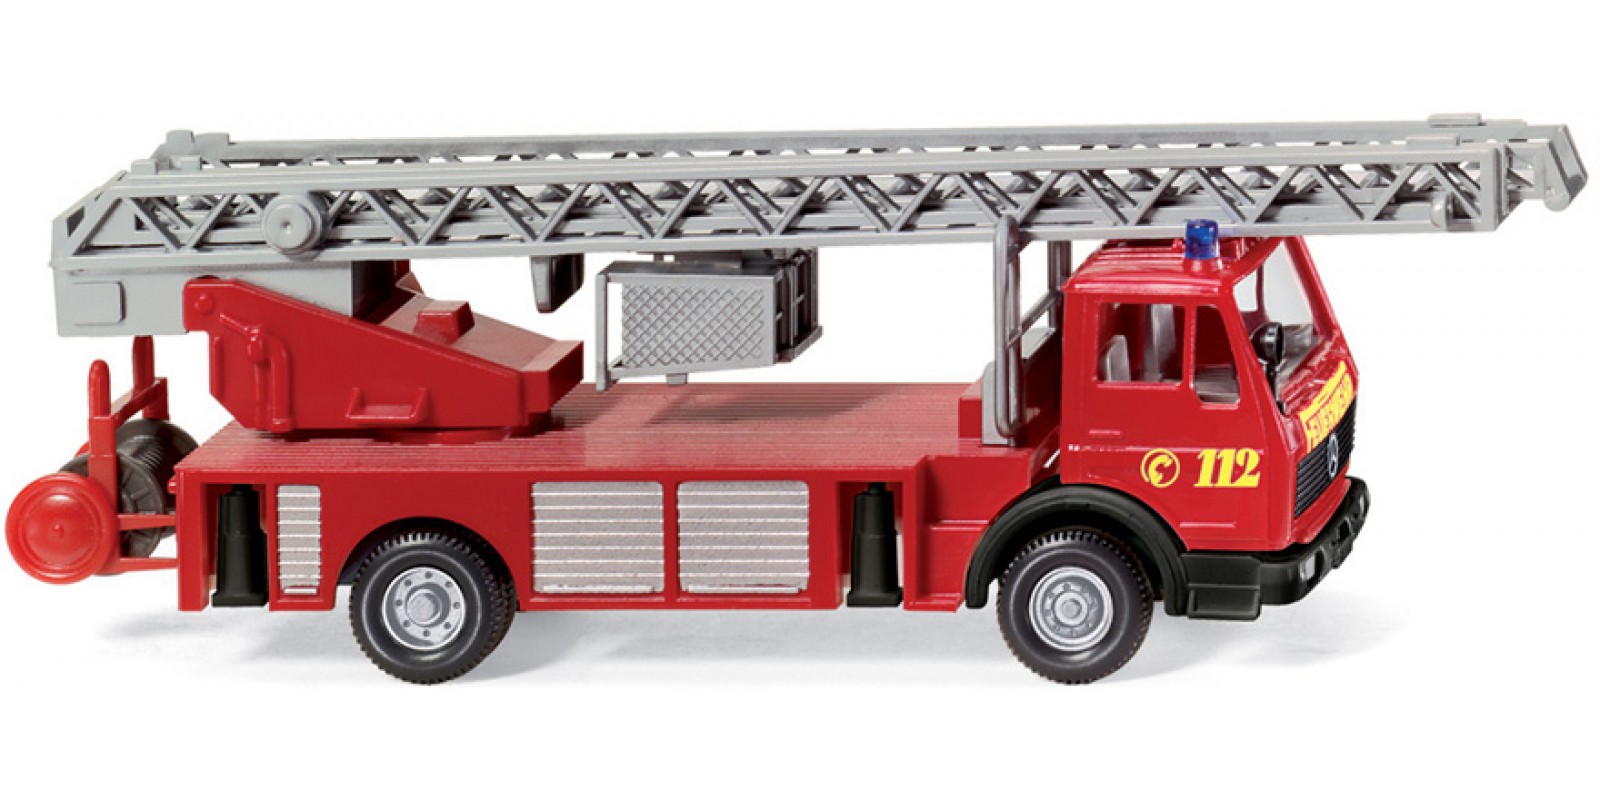 WI061802 Fire service - DLK 23-12